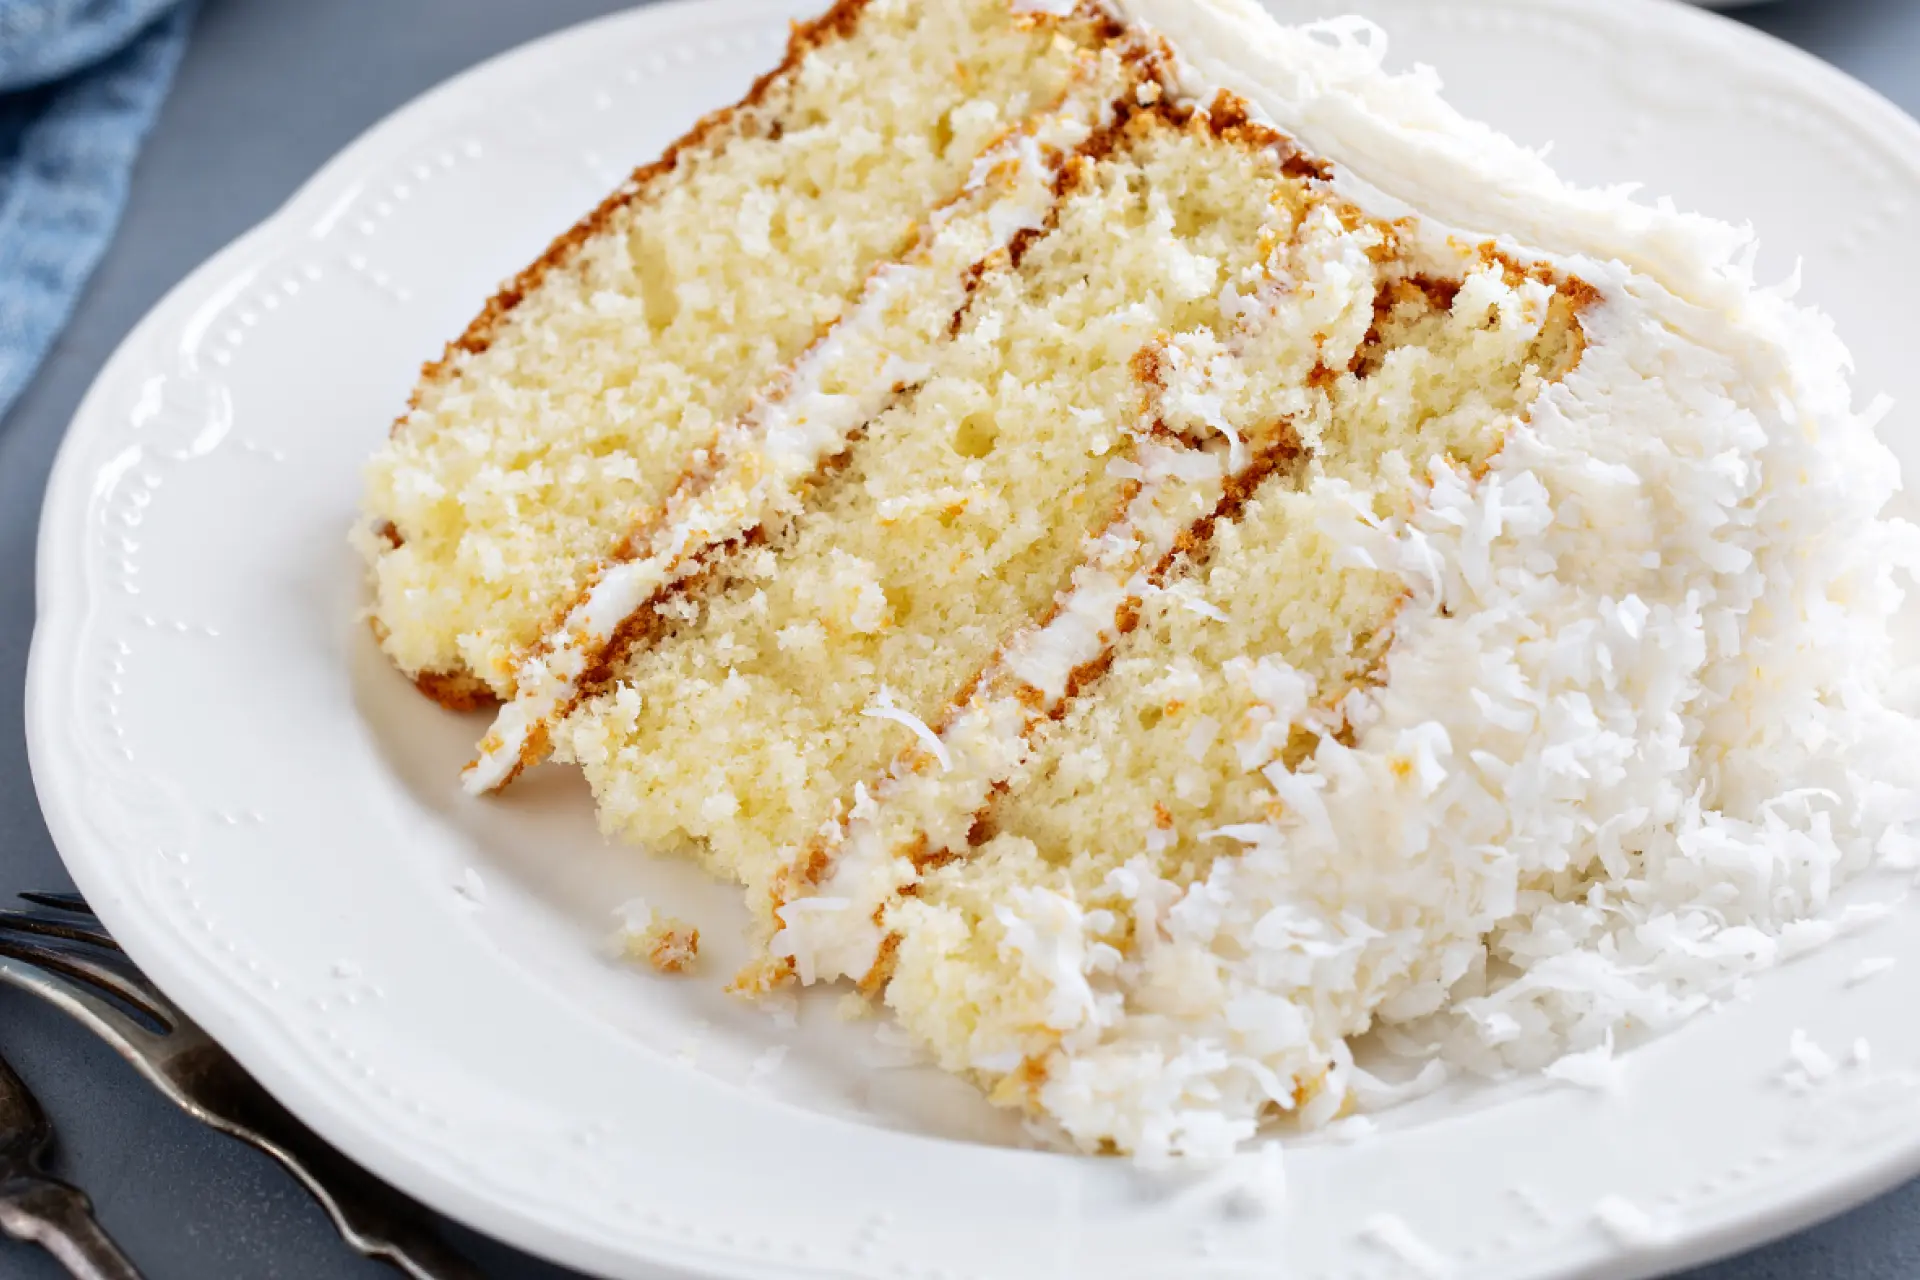 Fatia de bolo com massa branca e cobertura e recheio de prestígio com coco ralado, servido em prato branco com talheres ao redor